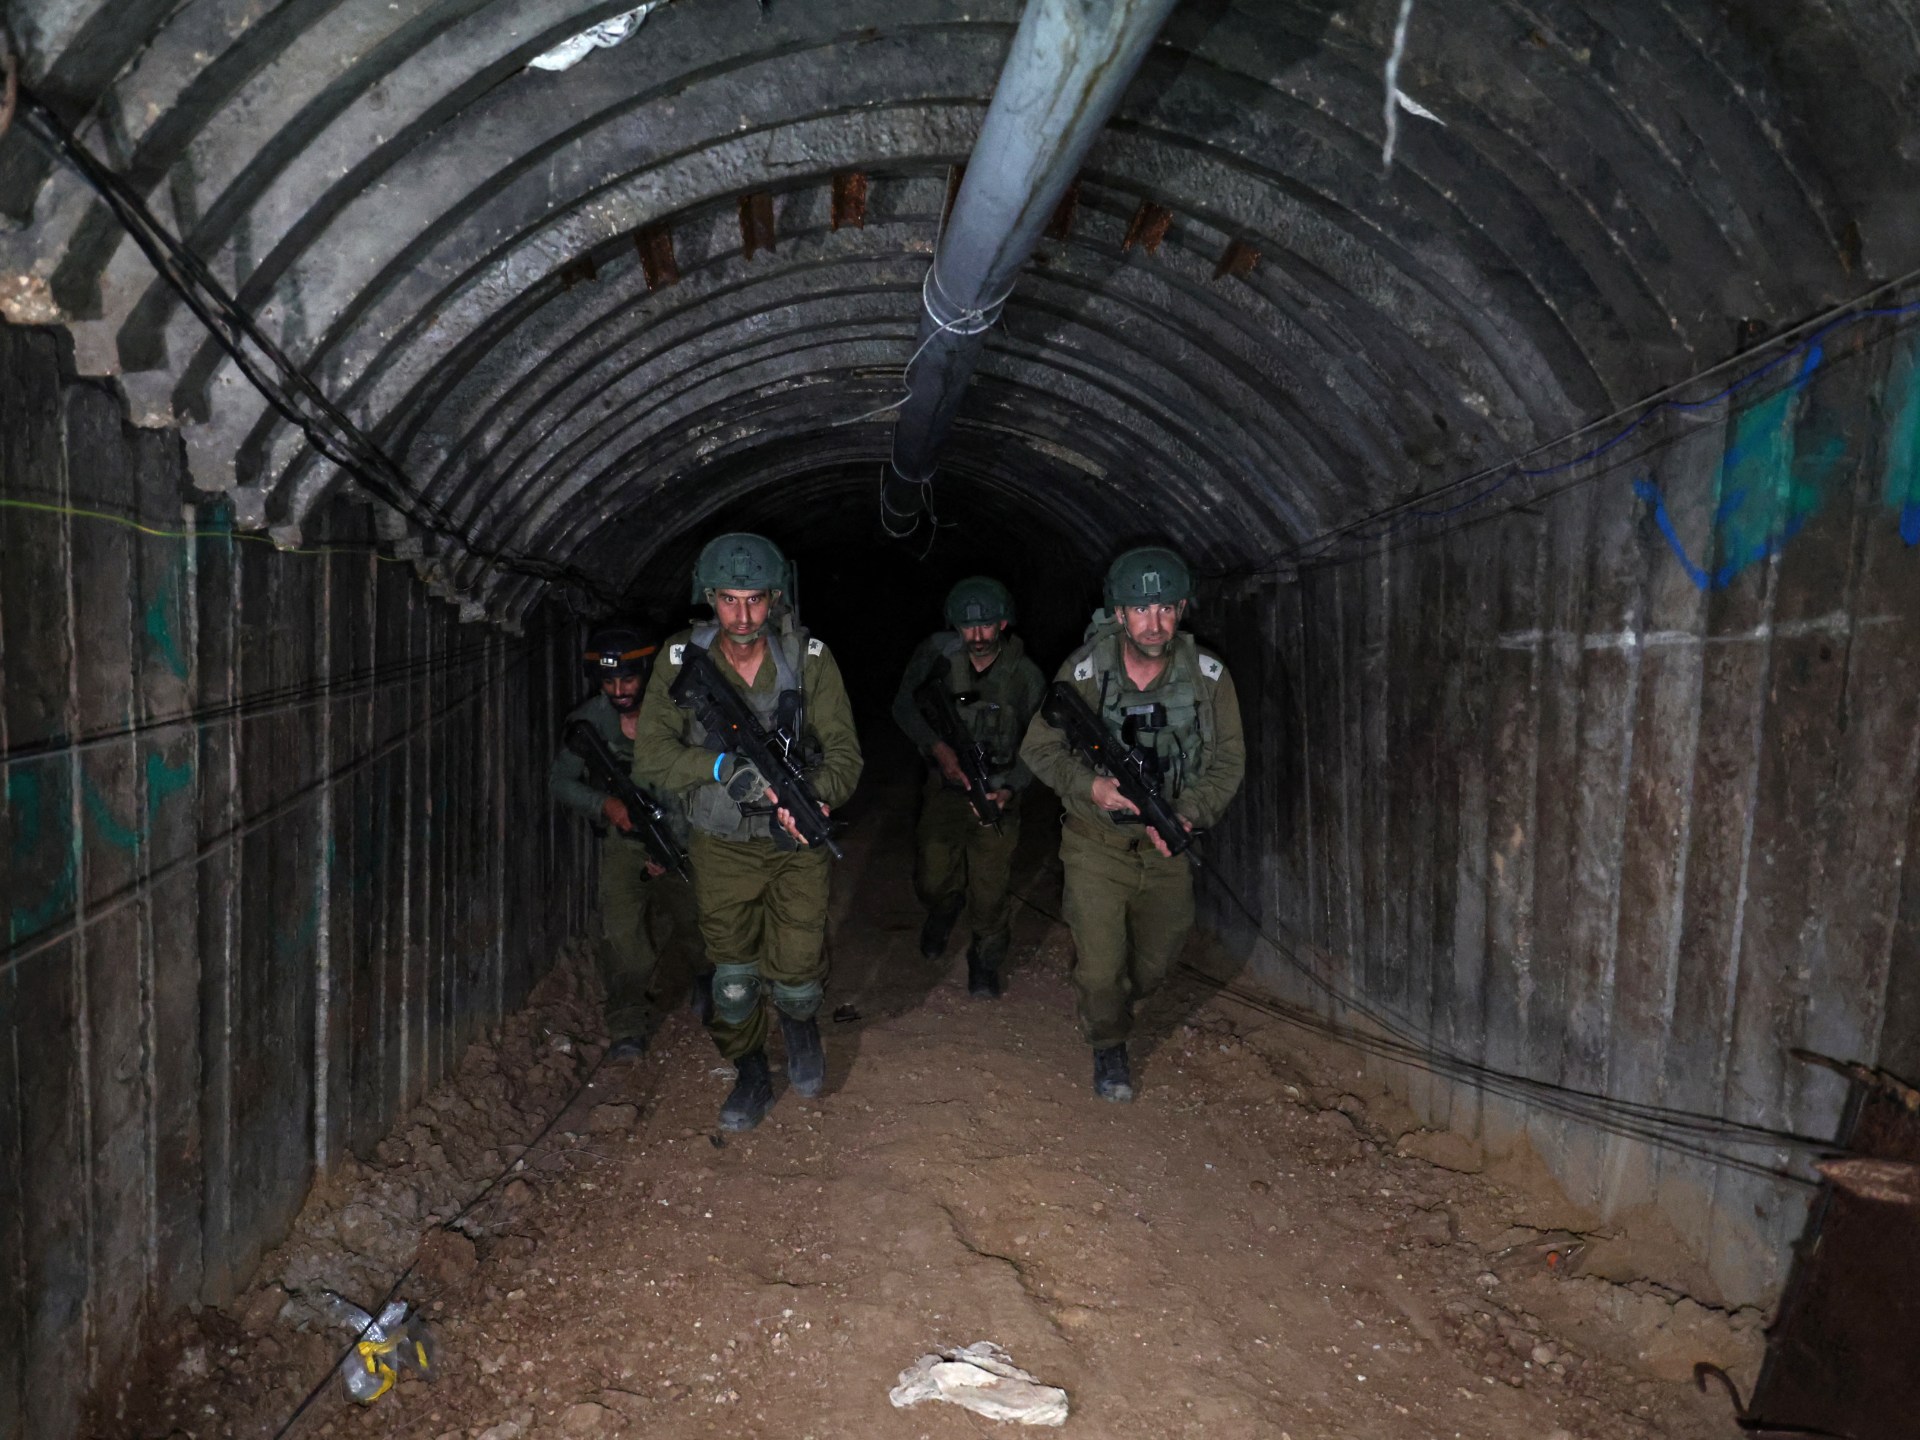 سيناتور أميركي: ما حصل للجيش الإسرائيلي مع أنفاق حماس درس ينبغي تعلمه | أخبار – البوكس نيوز